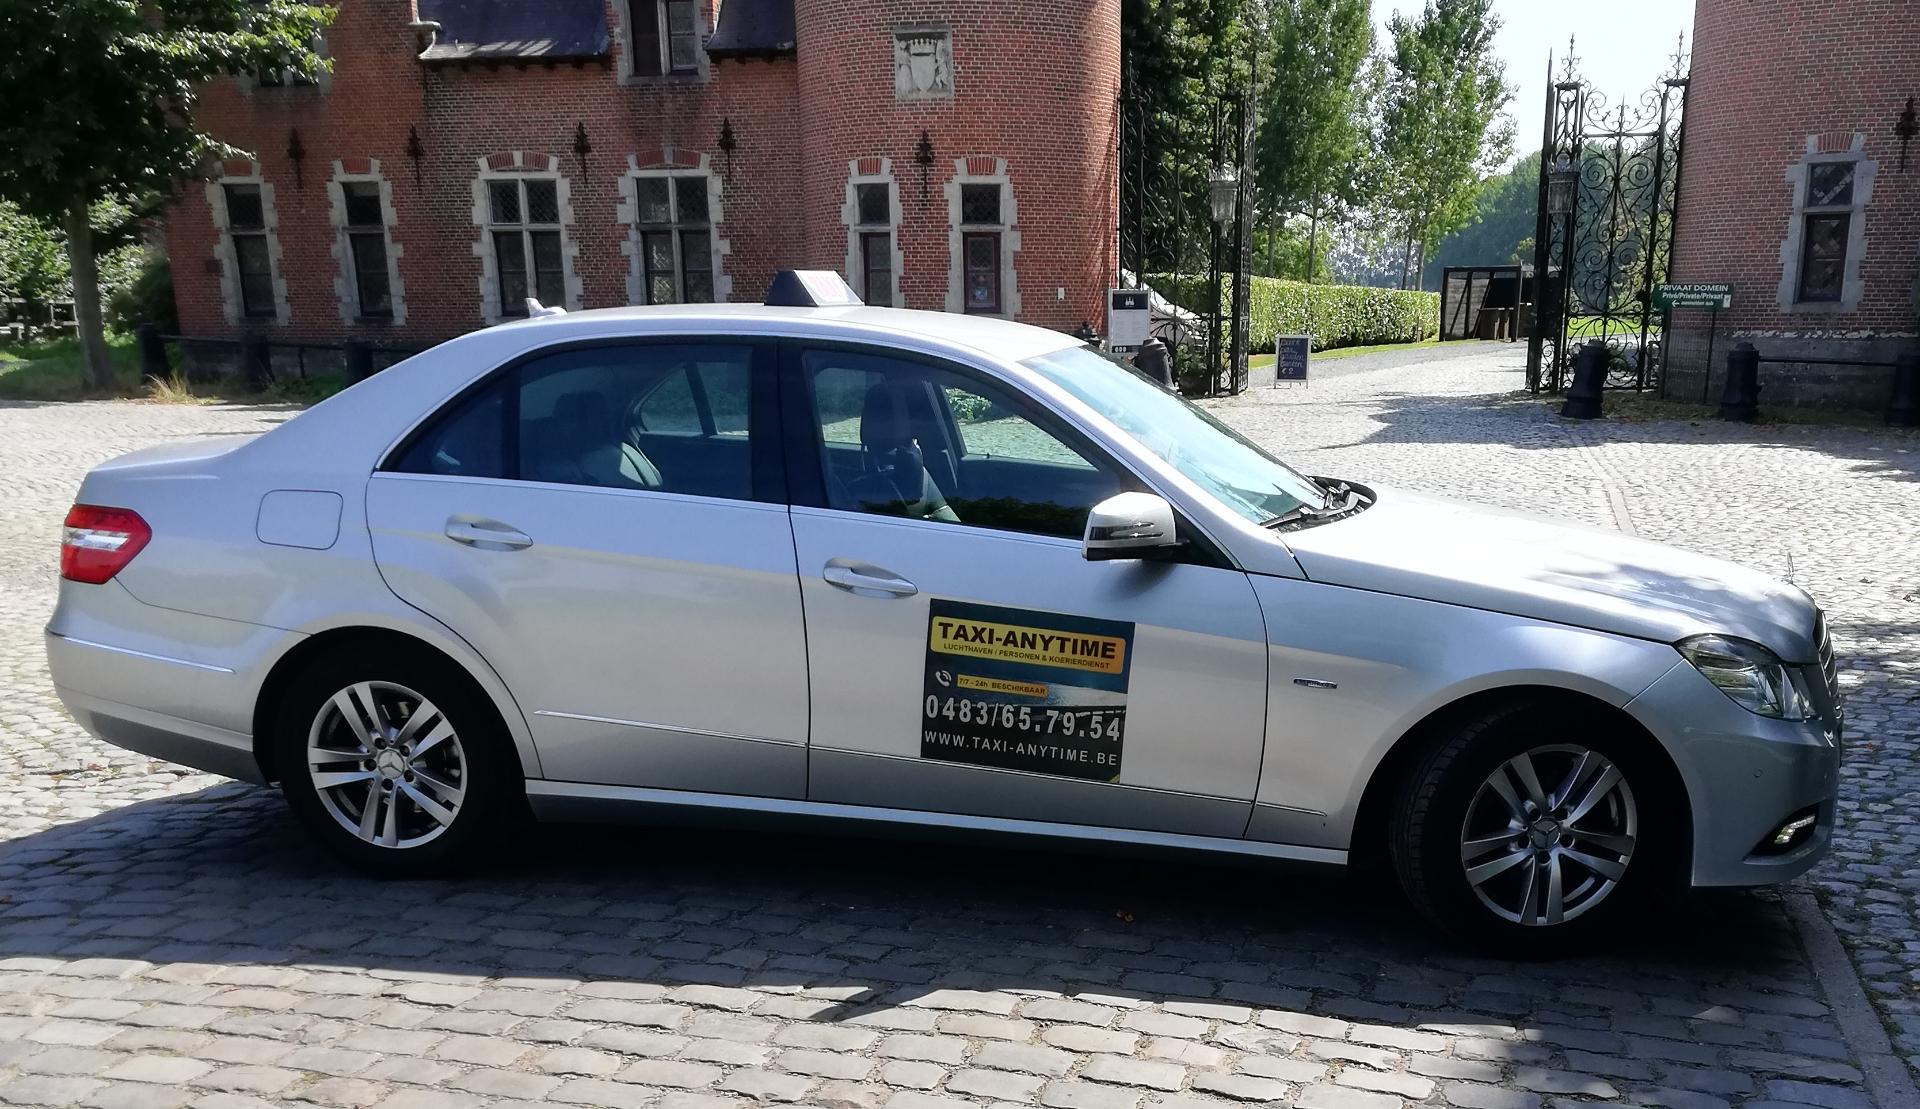 luxe-autoverhuurders Etterbeek Taxi-Anytime